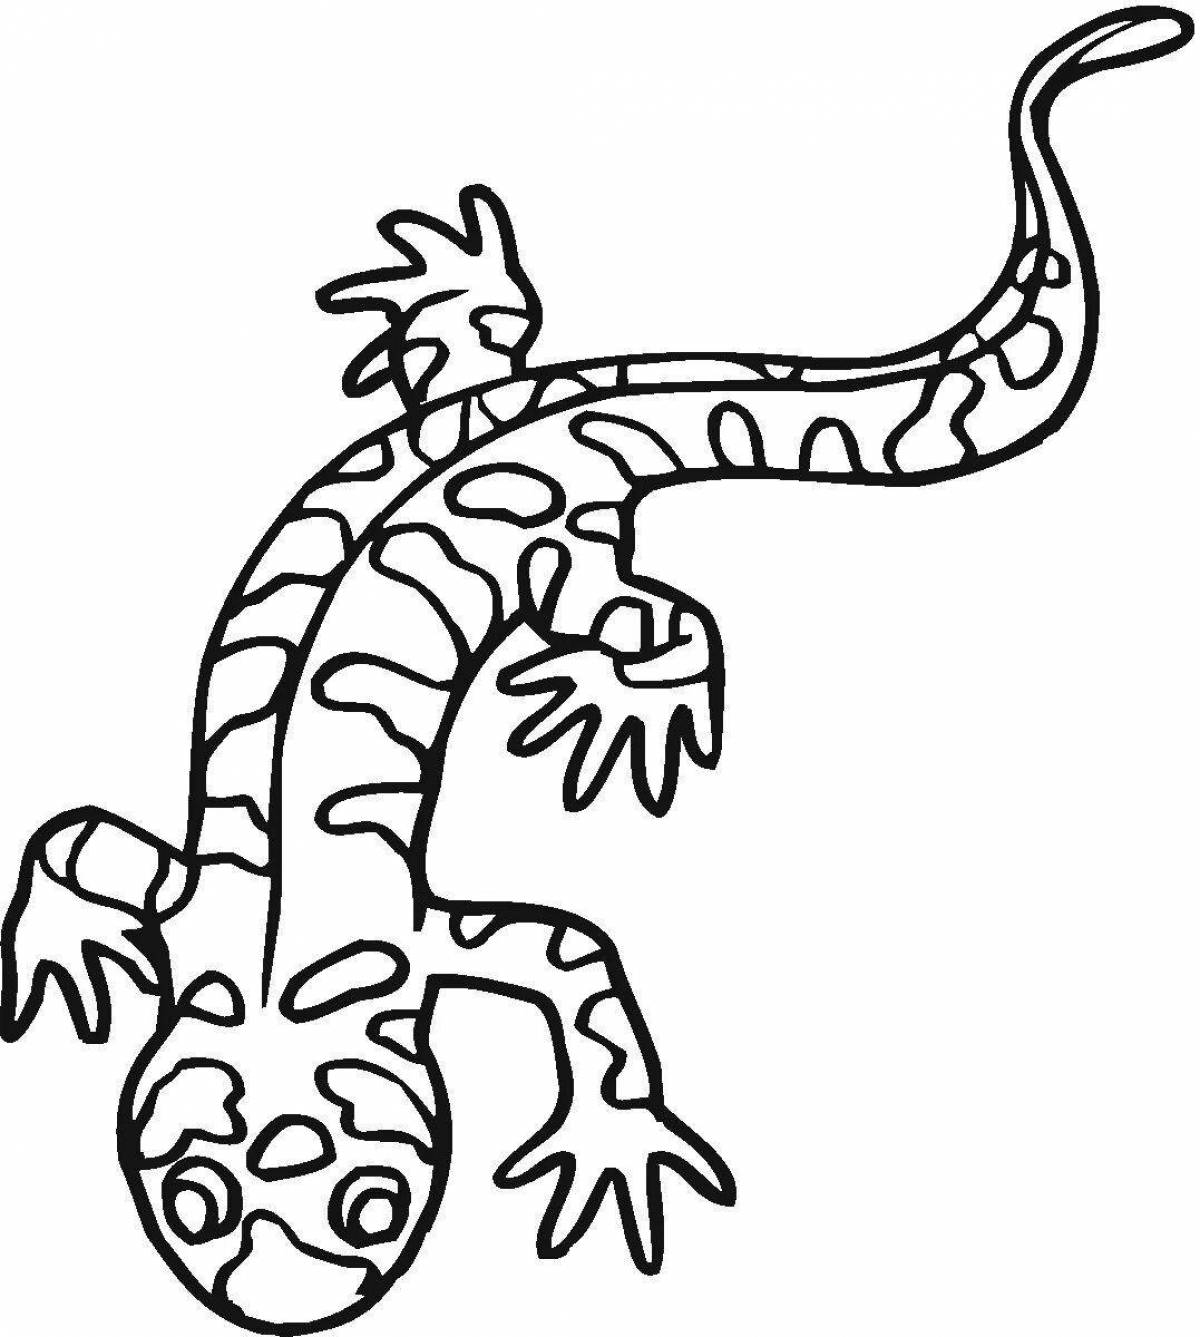 Comic salamander coloring book